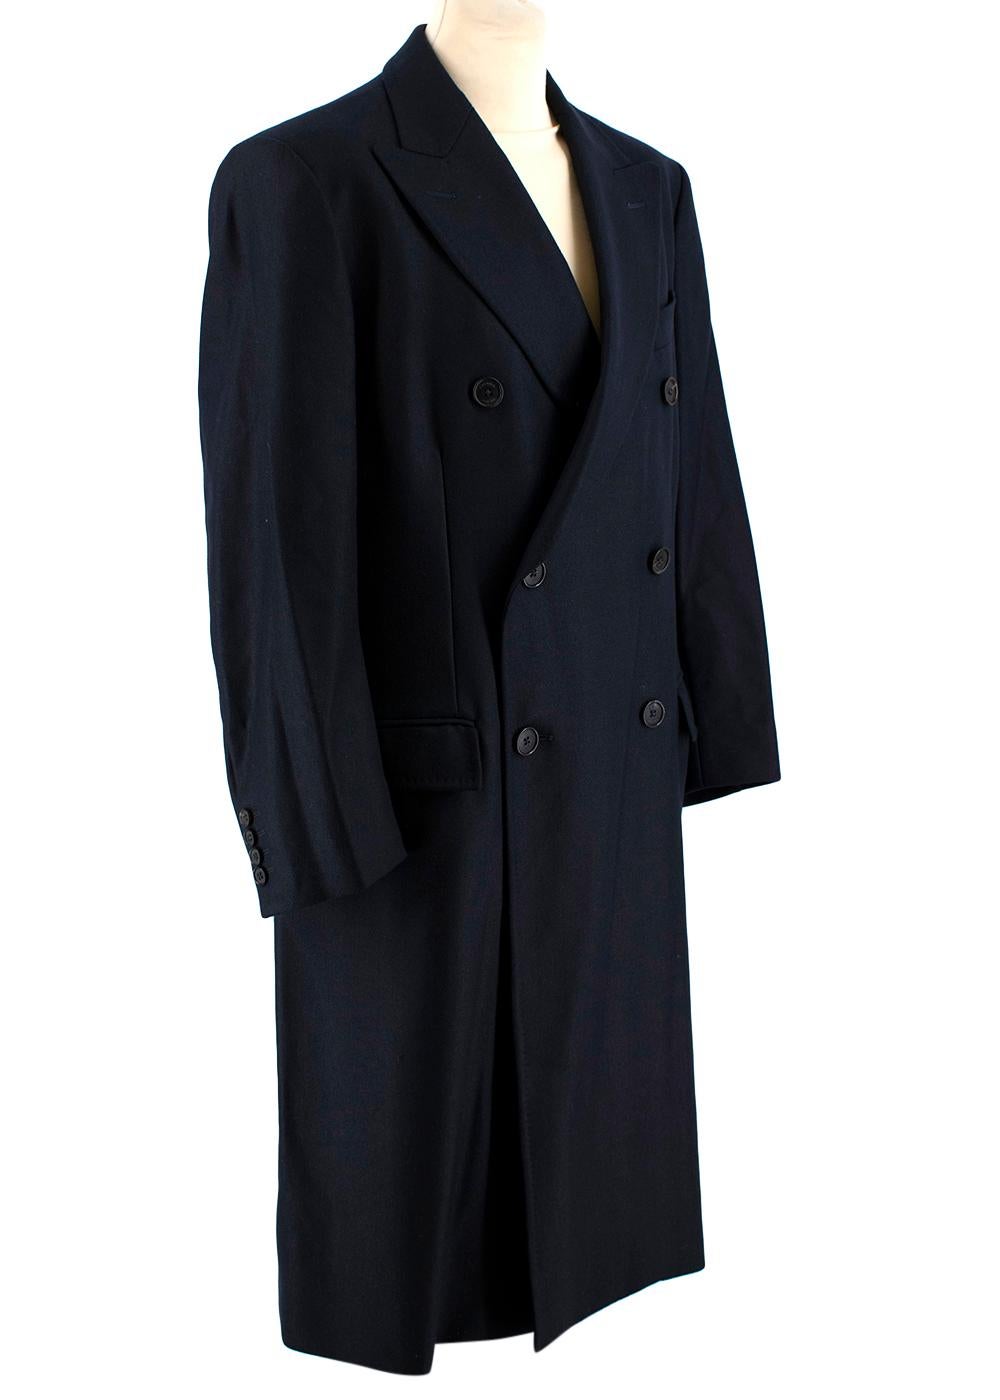 Black Crombie Navy Wool King Coat  - Size US 12